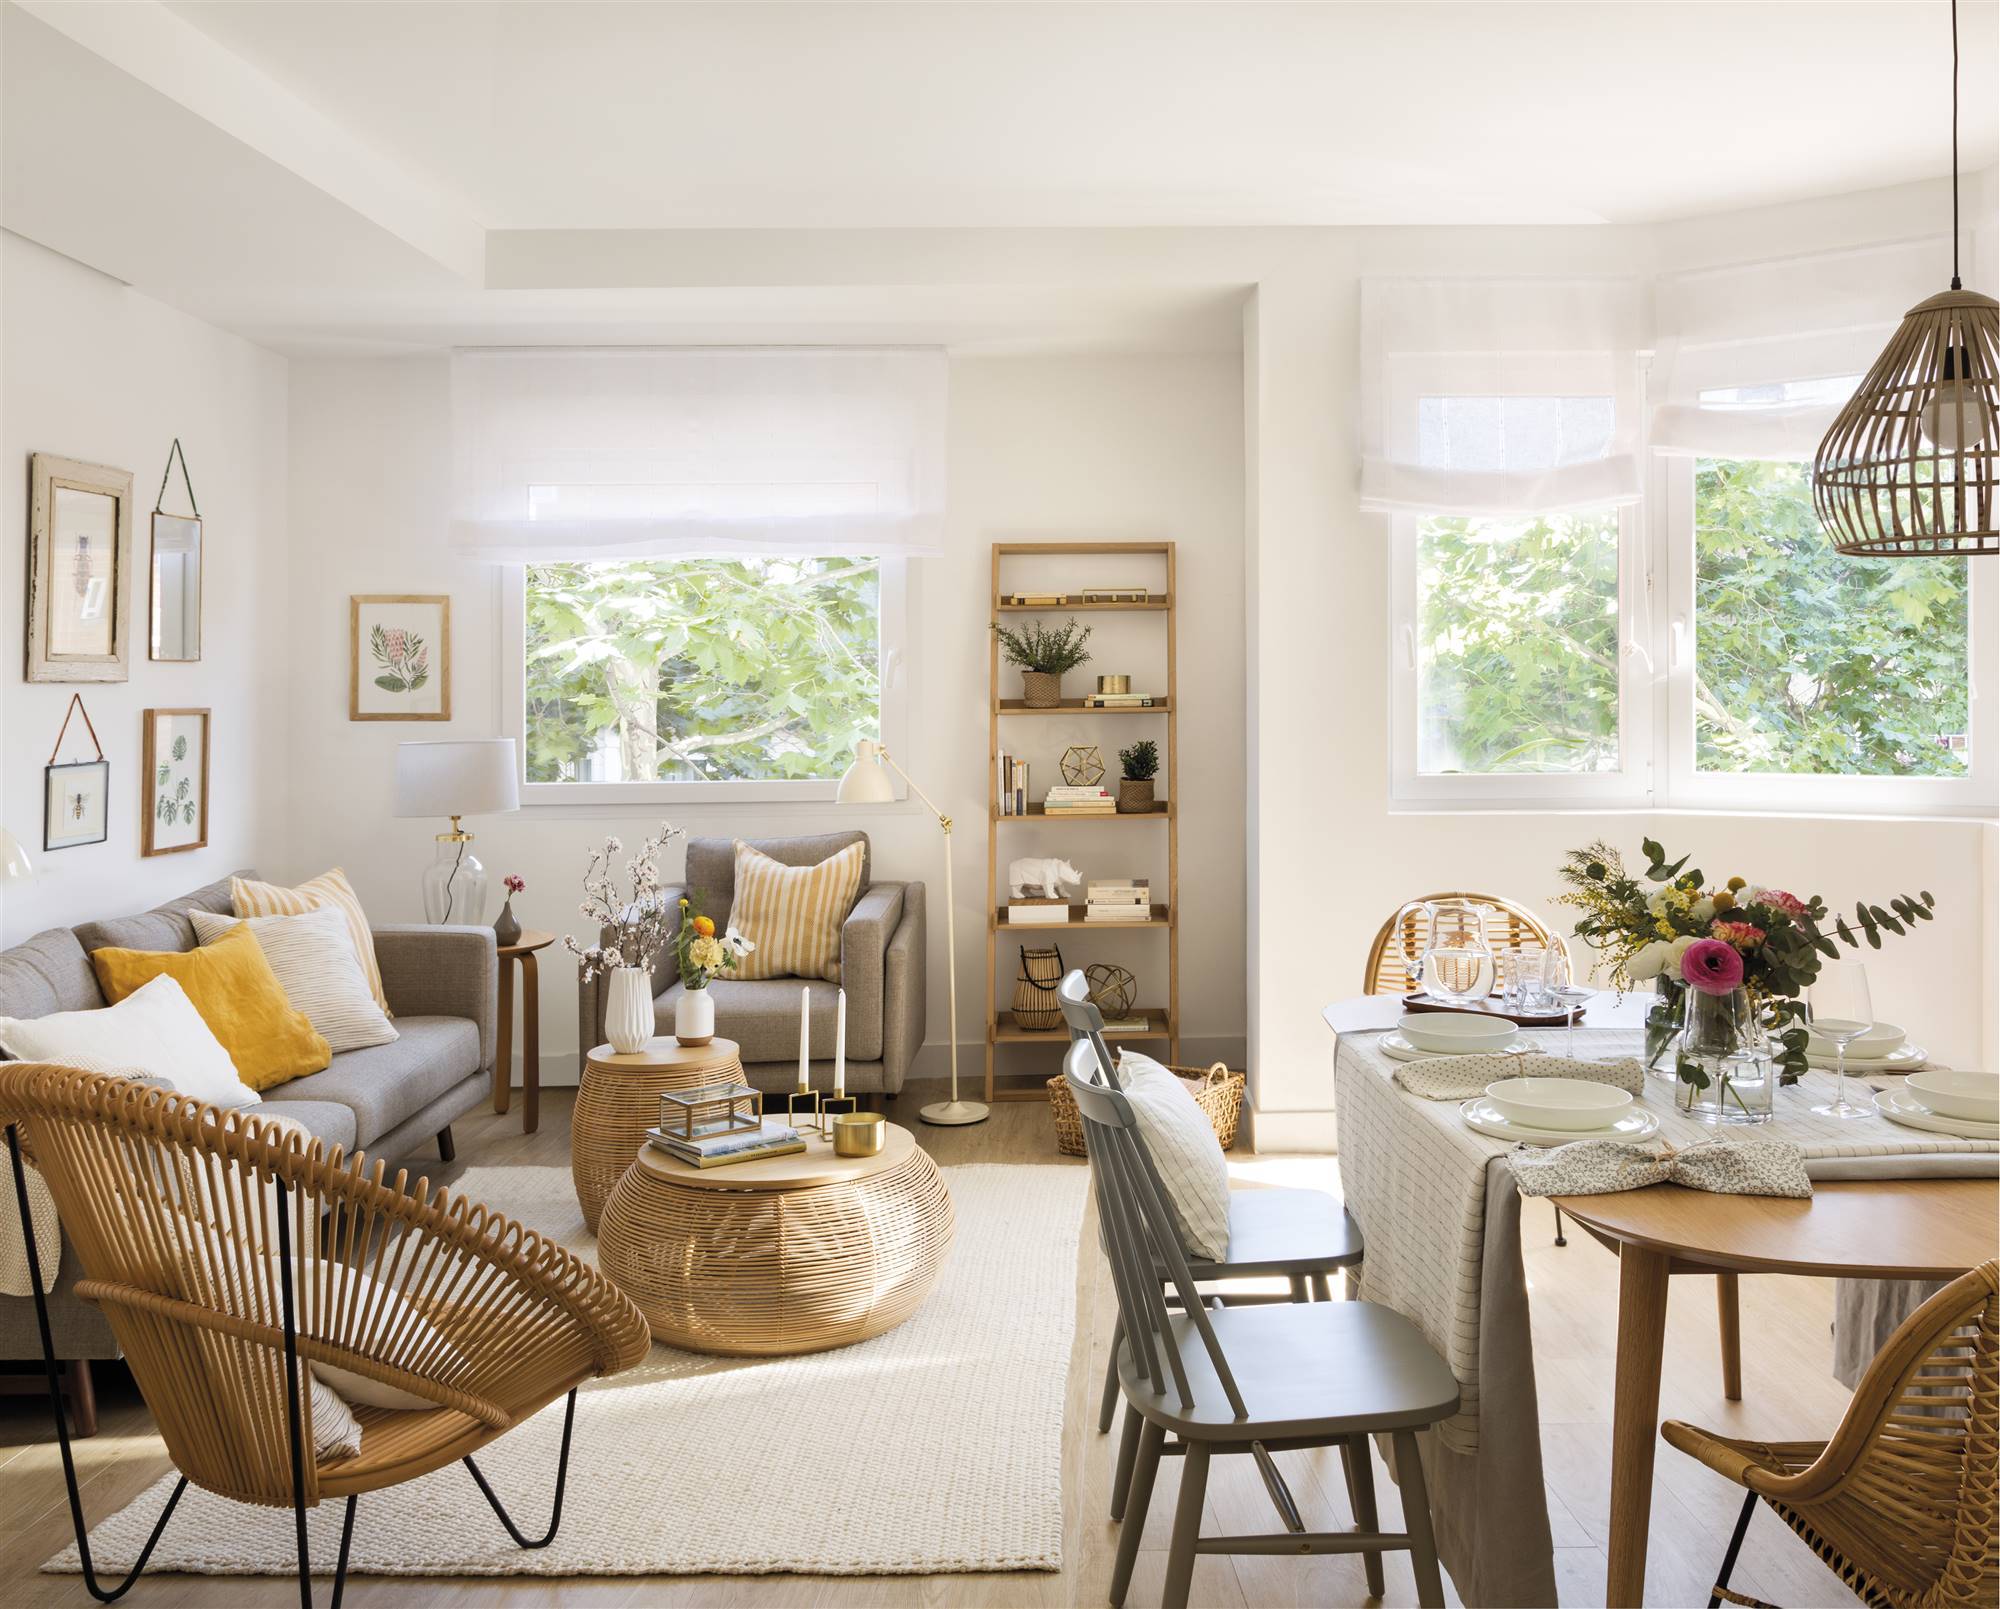 Salón con zona de estar y comedor decorados en tonos suaves y muebles ligeros. 